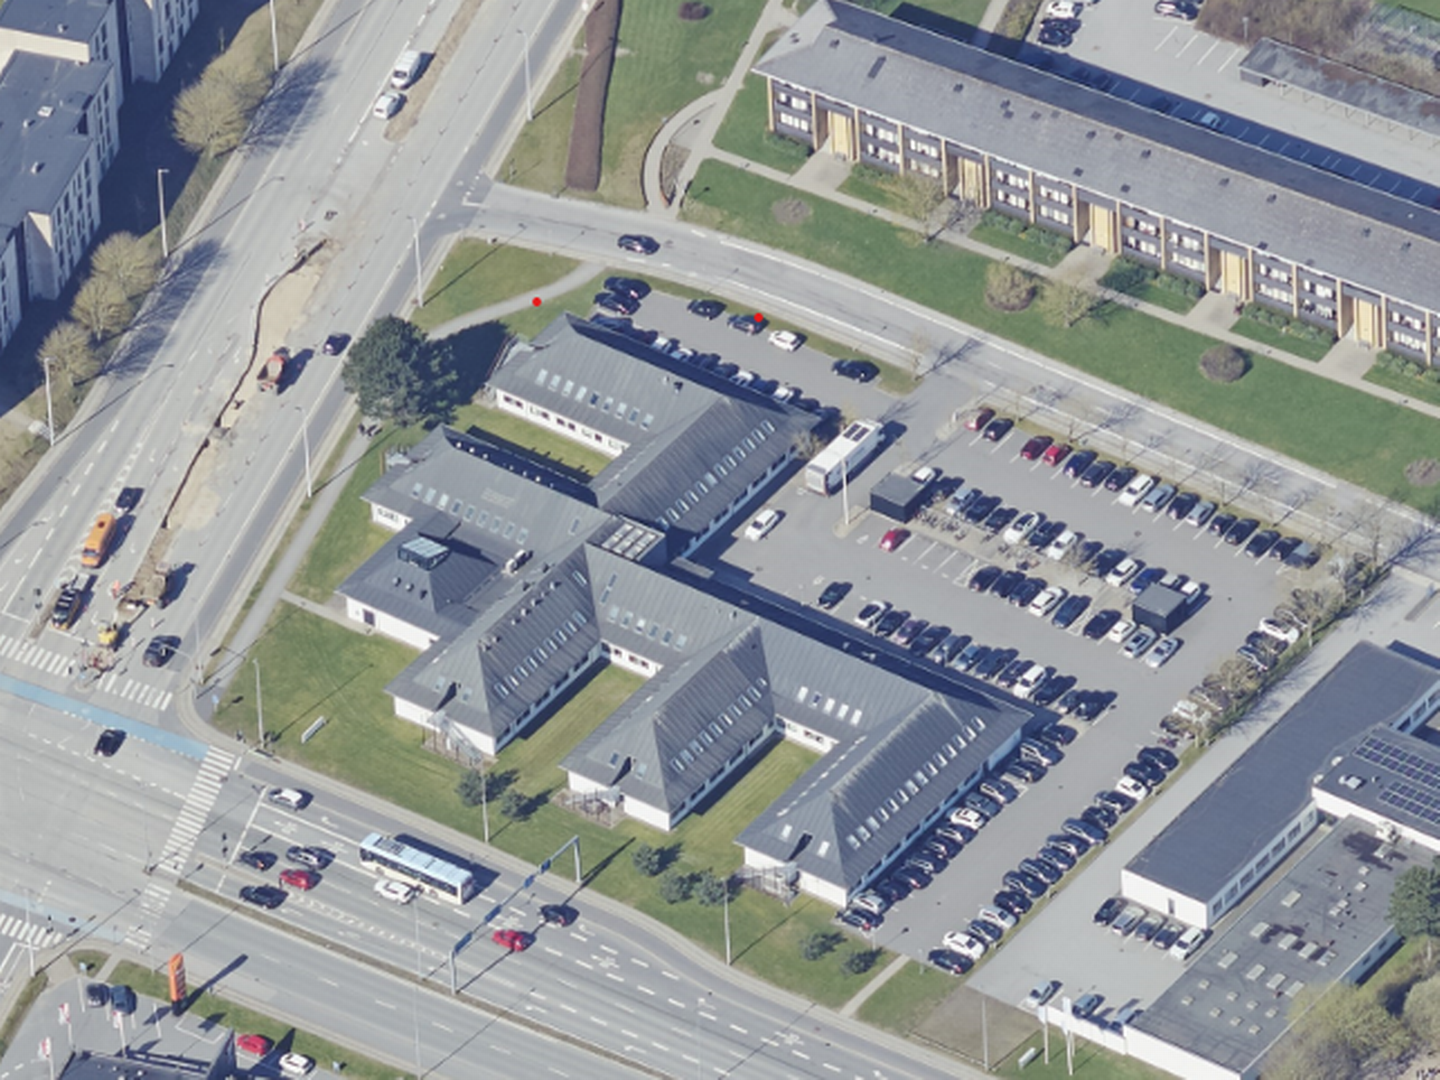 Revisionsfirmaet Beierholm har med sparring fra erhvervsmægleren Nordicals solgt sin 4300 kvm store ejendom på Voergårdvej i Aalborg.